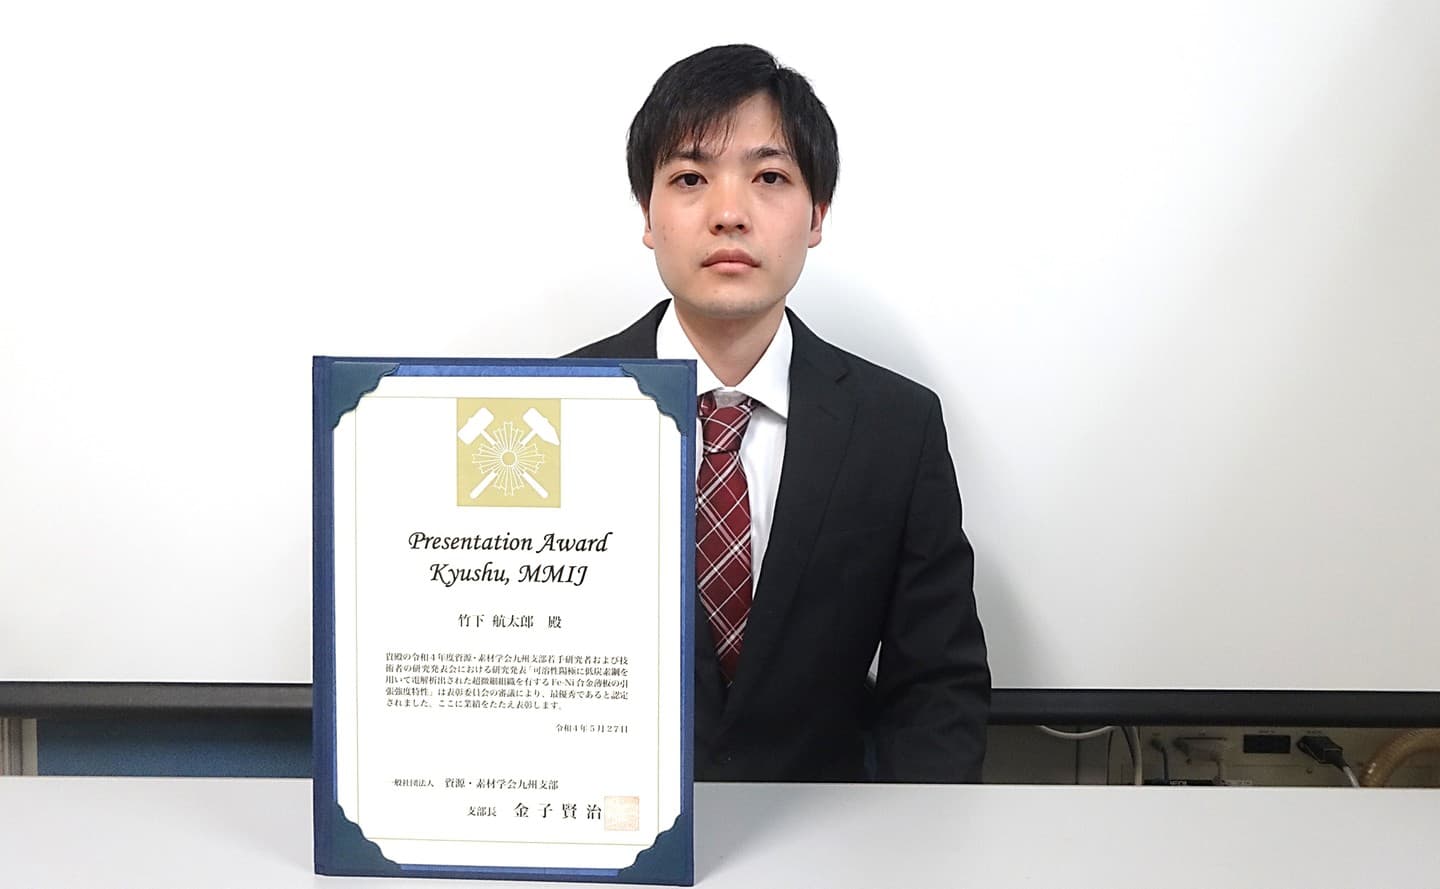 竹下航太郎君(M1)が、資源・素材学会九州支部若手研究者および技術者の研究発表会において、Presentation Award Kyushu, MMIJを受賞しました。2022/05/27